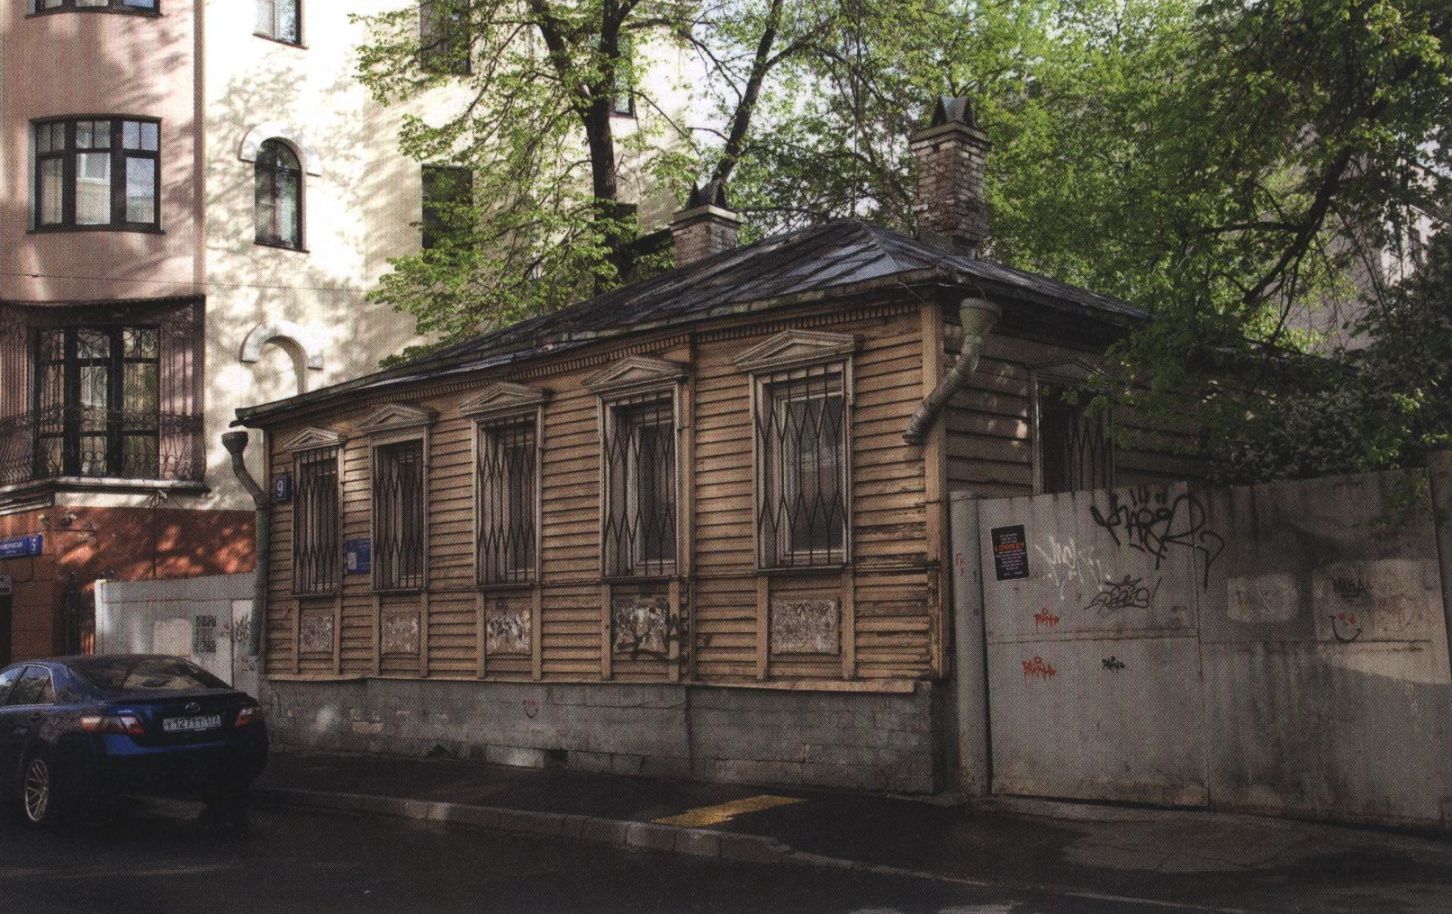 Мансуровский переулок, дом 9. 2016 г. Дом № 9 был построен в 1834 году мещанкой П.Ф. Емельяновой. В конце XIX века он перешел к купцу С.В. Топленинову, а от него по наследству к сыновьям Владимиру и Сергею